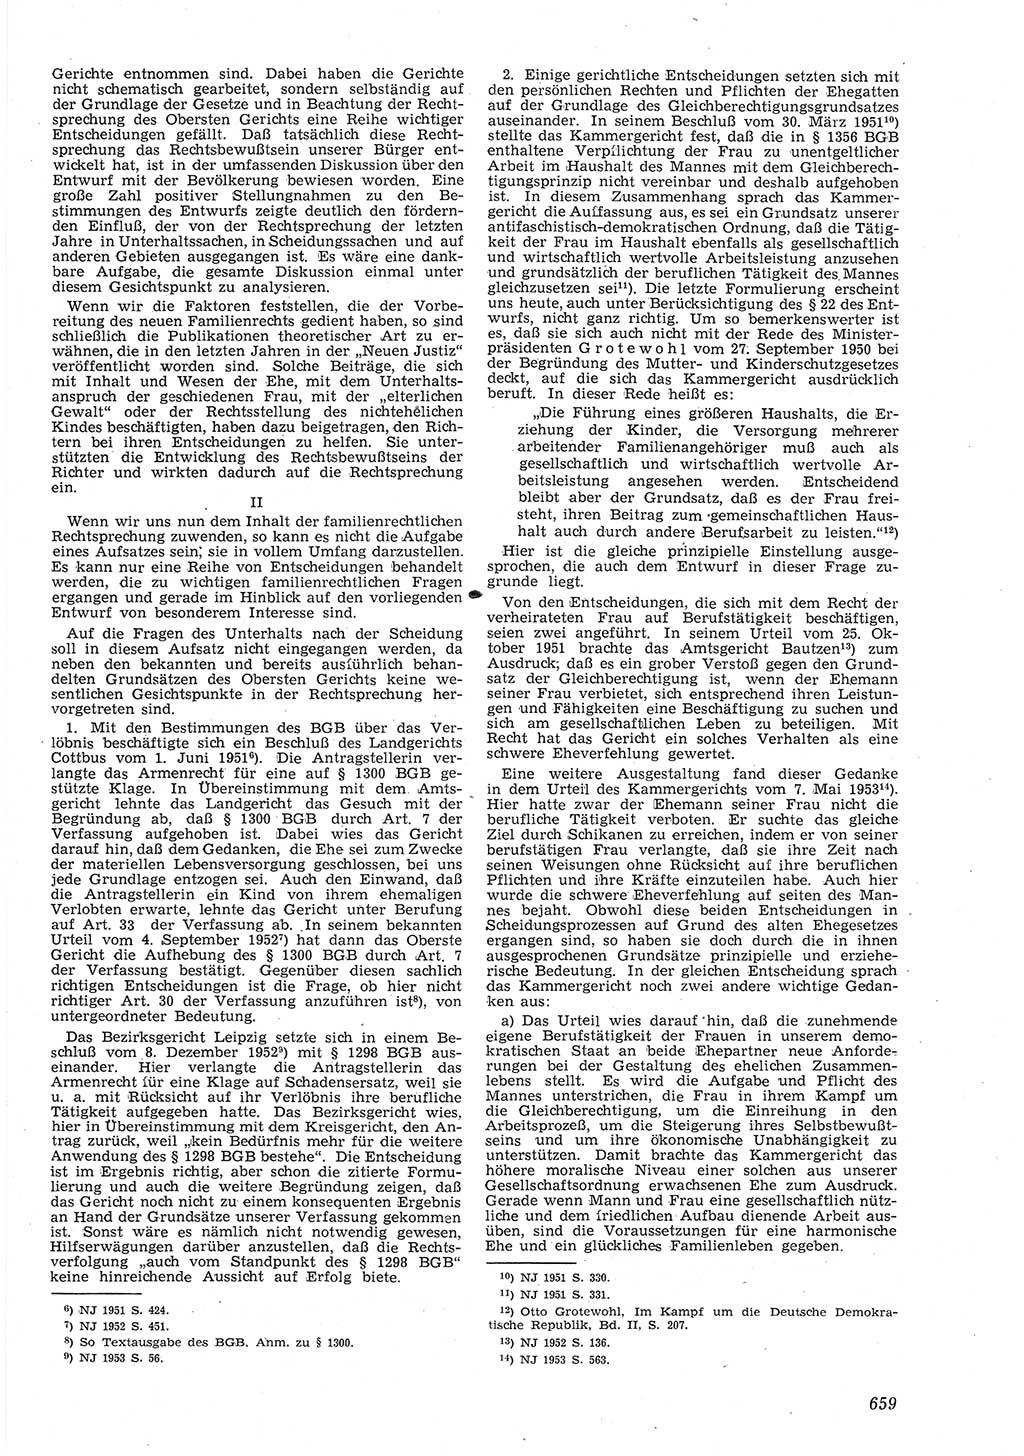 Neue Justiz (NJ), Zeitschrift für Recht und Rechtswissenschaft [Deutsche Demokratische Republik (DDR)], 8. Jahrgang 1954, Seite 659 (NJ DDR 1954, S. 659)